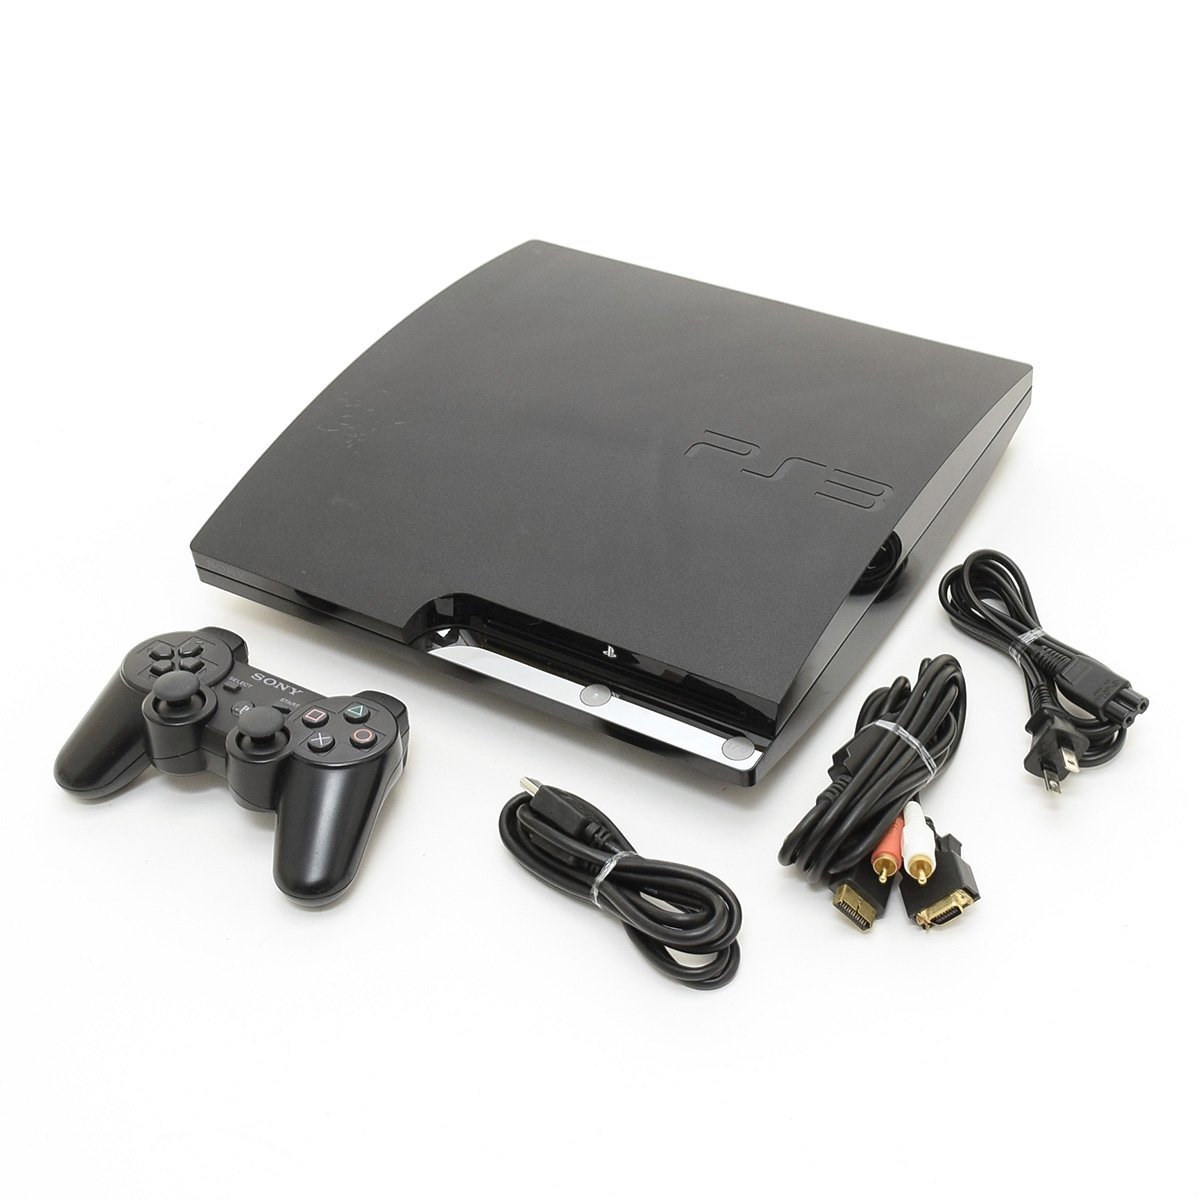 最高の品質の ▽495806 【すぐ遊べる】SONY PlayStation3 本体セット